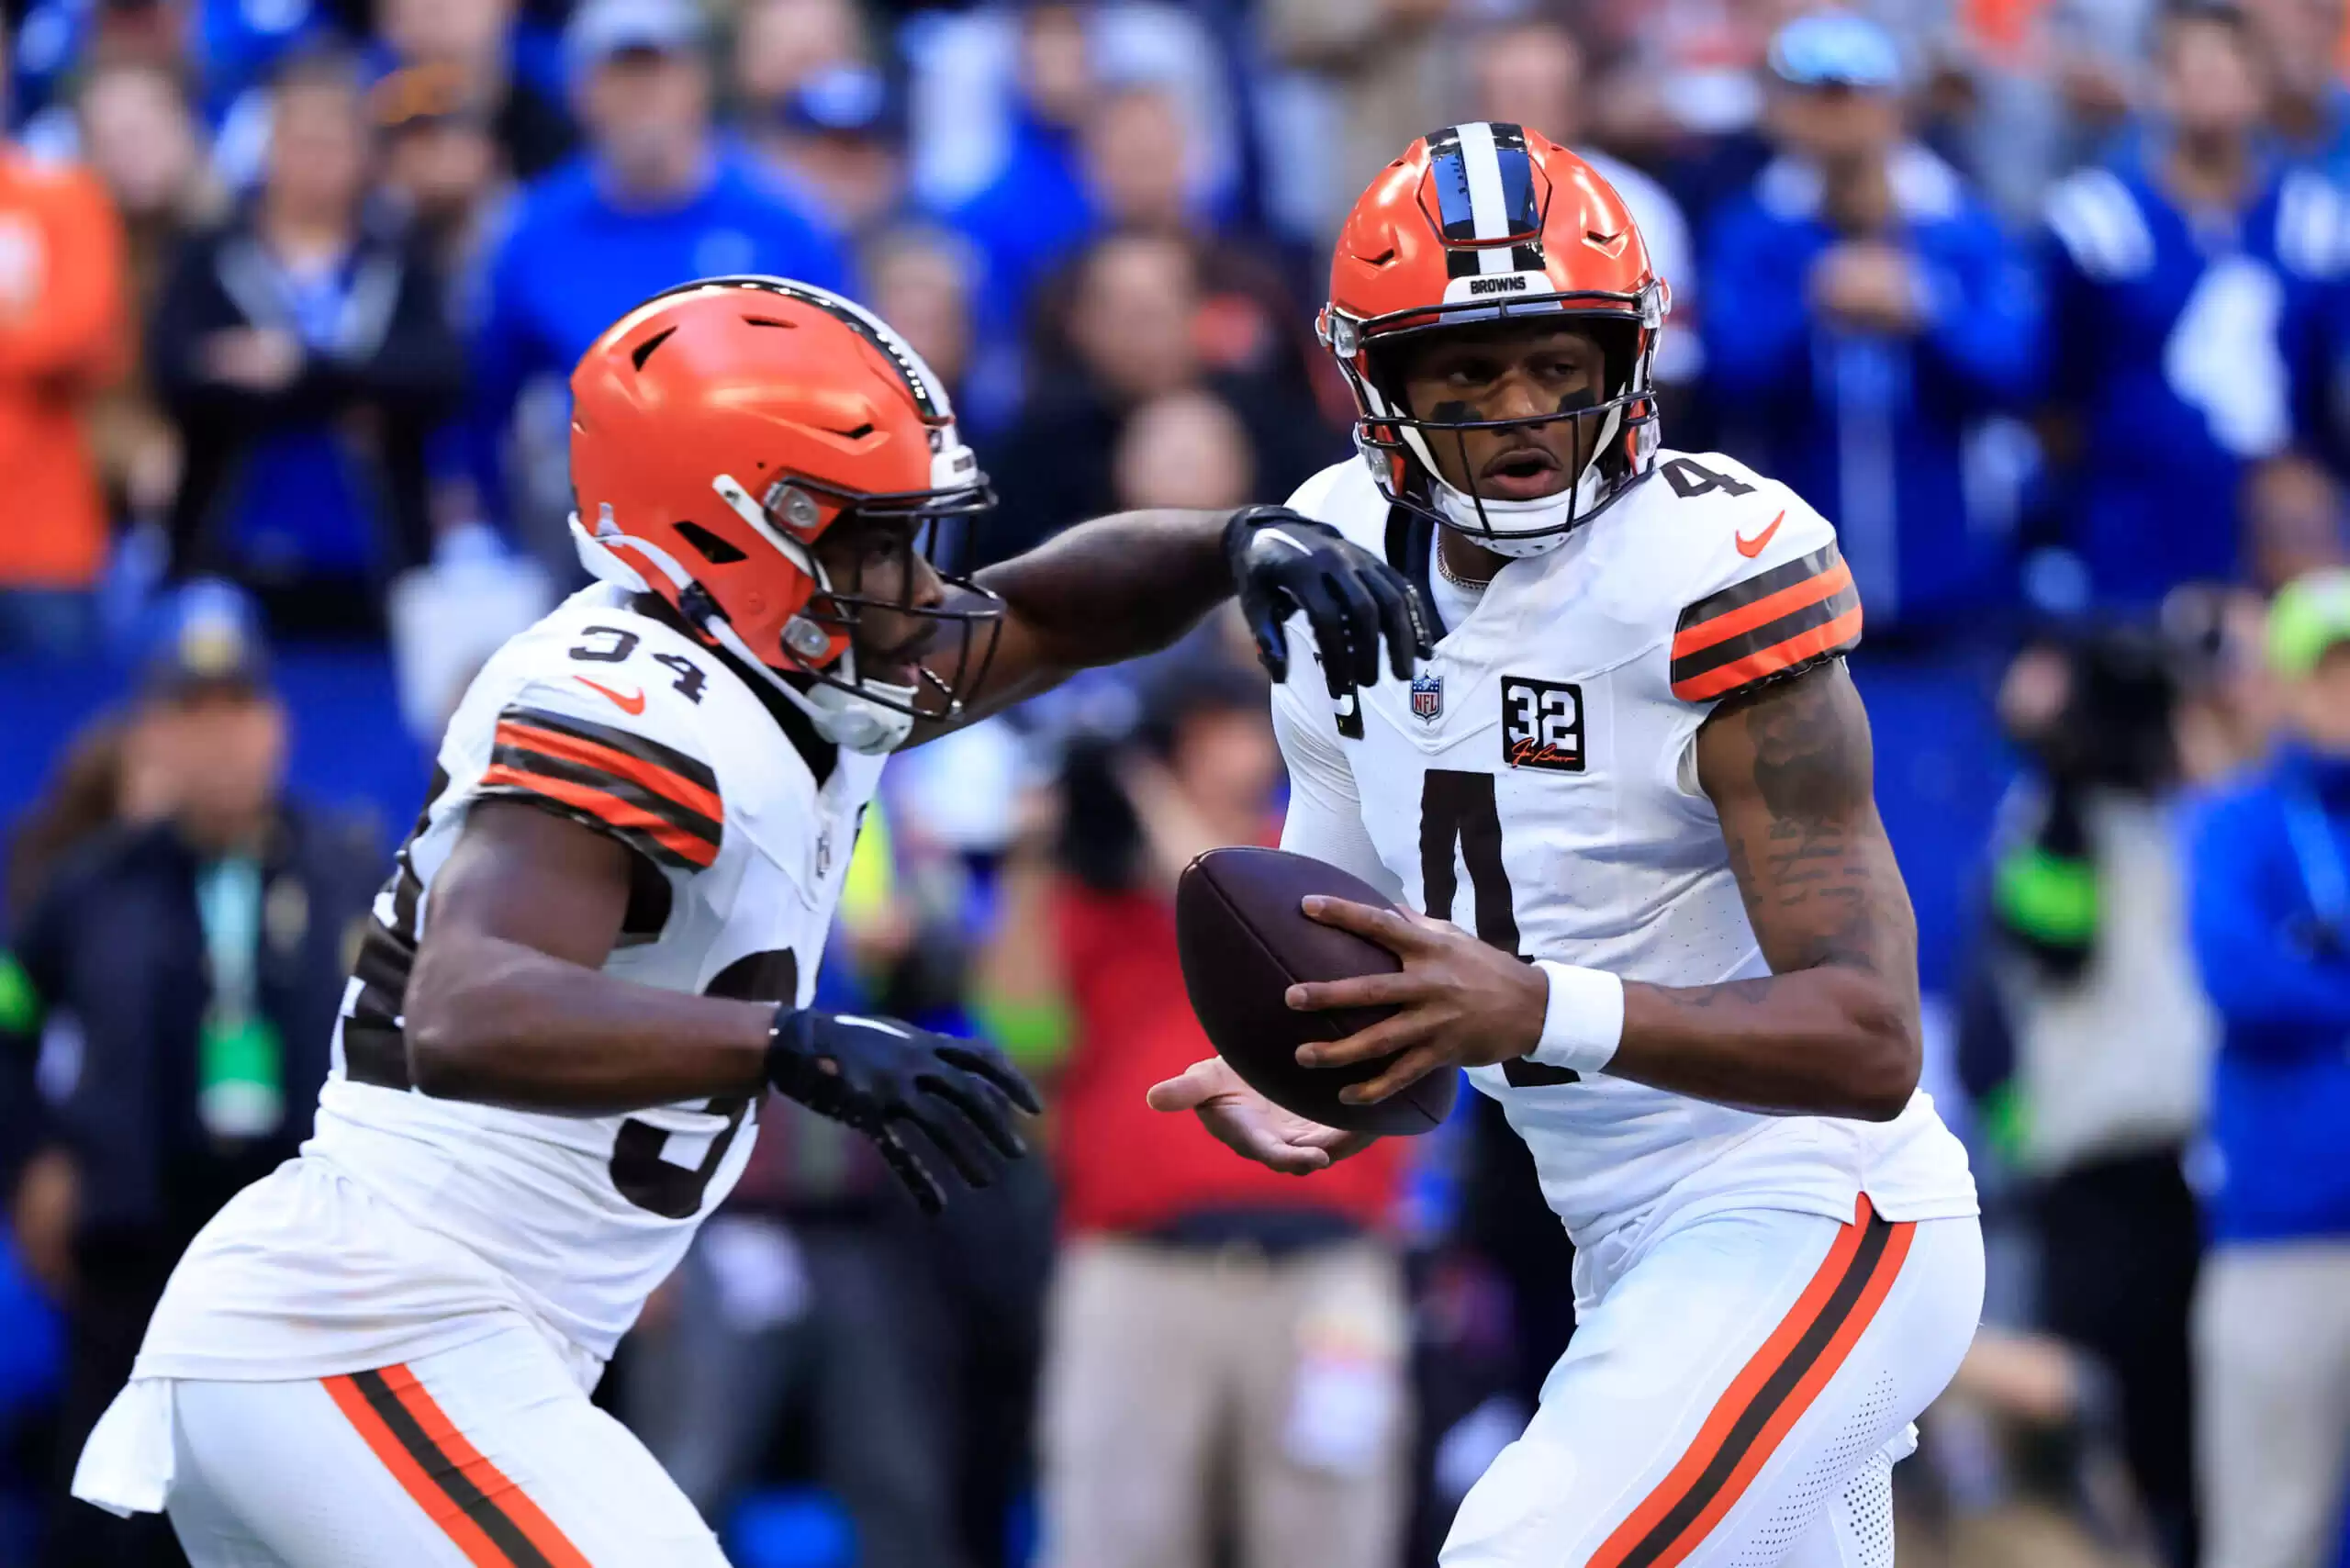 Browns vs Ravens: Línea, Cuotas, Predicciones - Los expertos prefieren a Baltimore sobre Cleveland